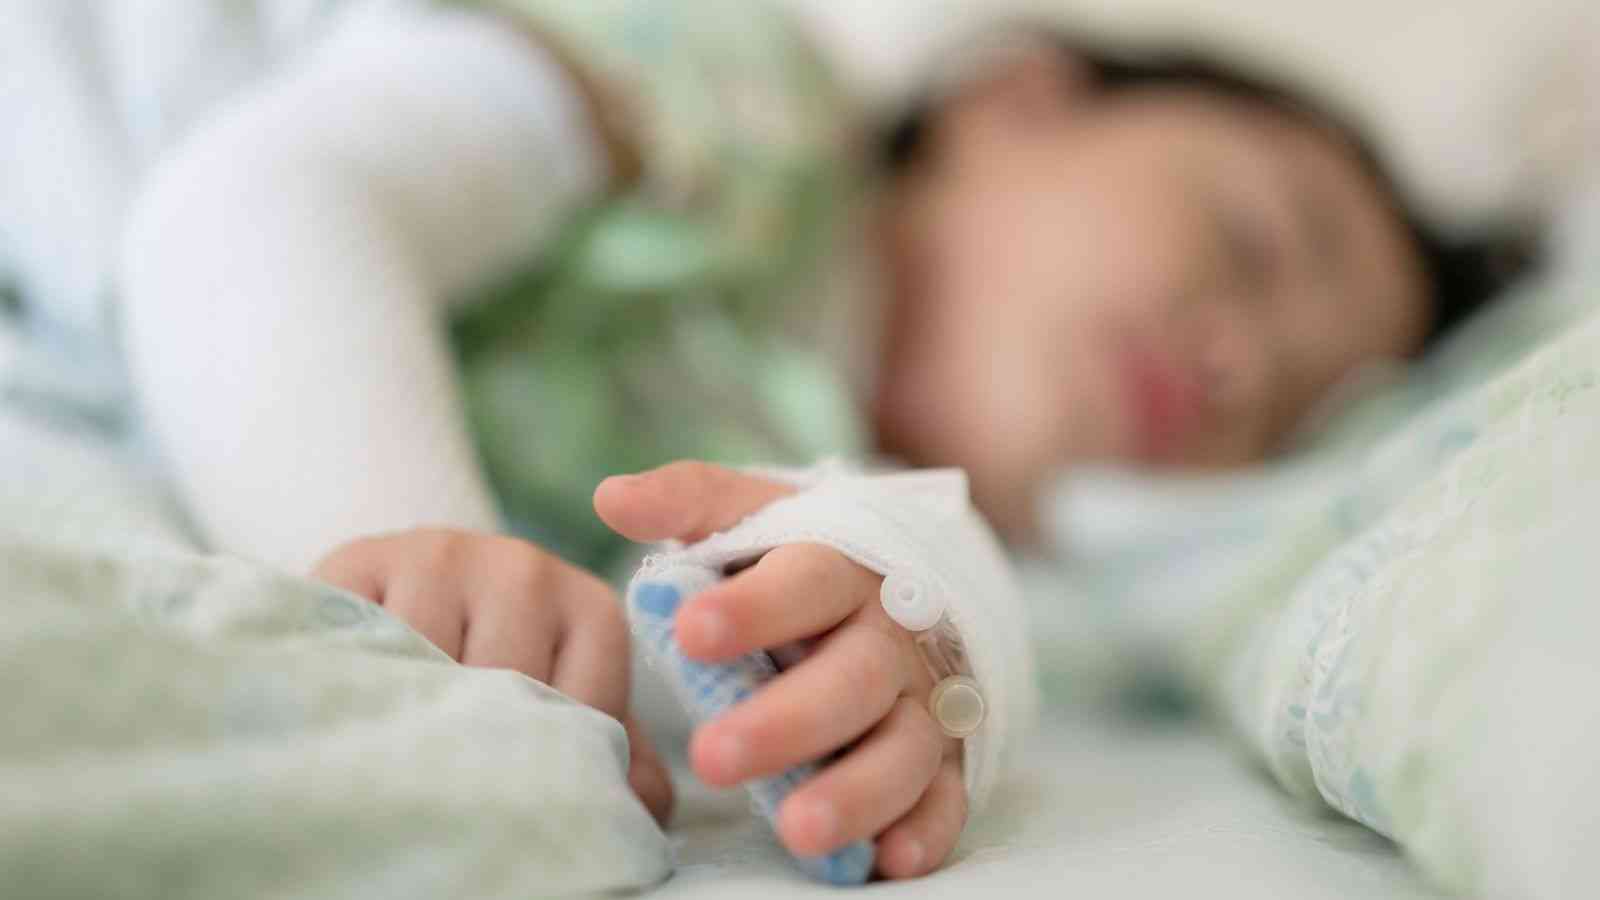 Οξεία ηπατίτιδα σε παιδιά: Τα lockdown για τον κορονοϊό ενδέχεται να τα επηρέασαν – Πώς εμπλέκονται δύο ιοί